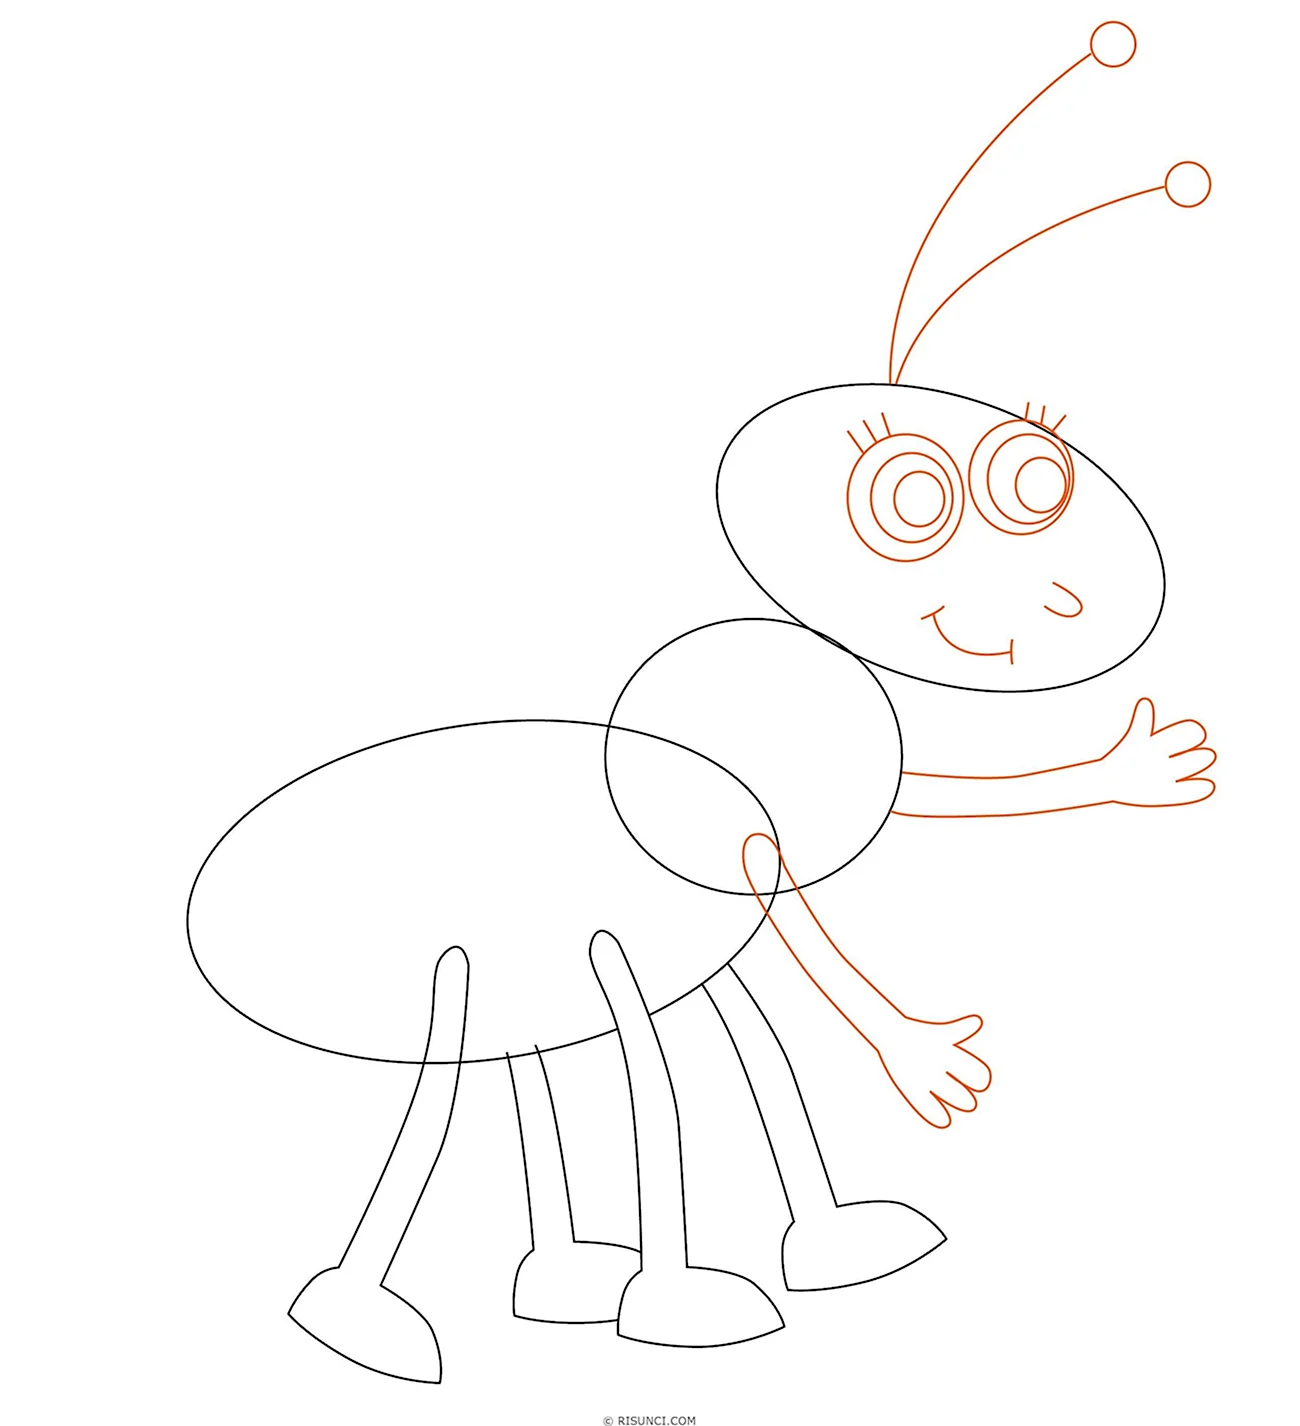 Поэтапное рисование муравья для детей. Для срисовки